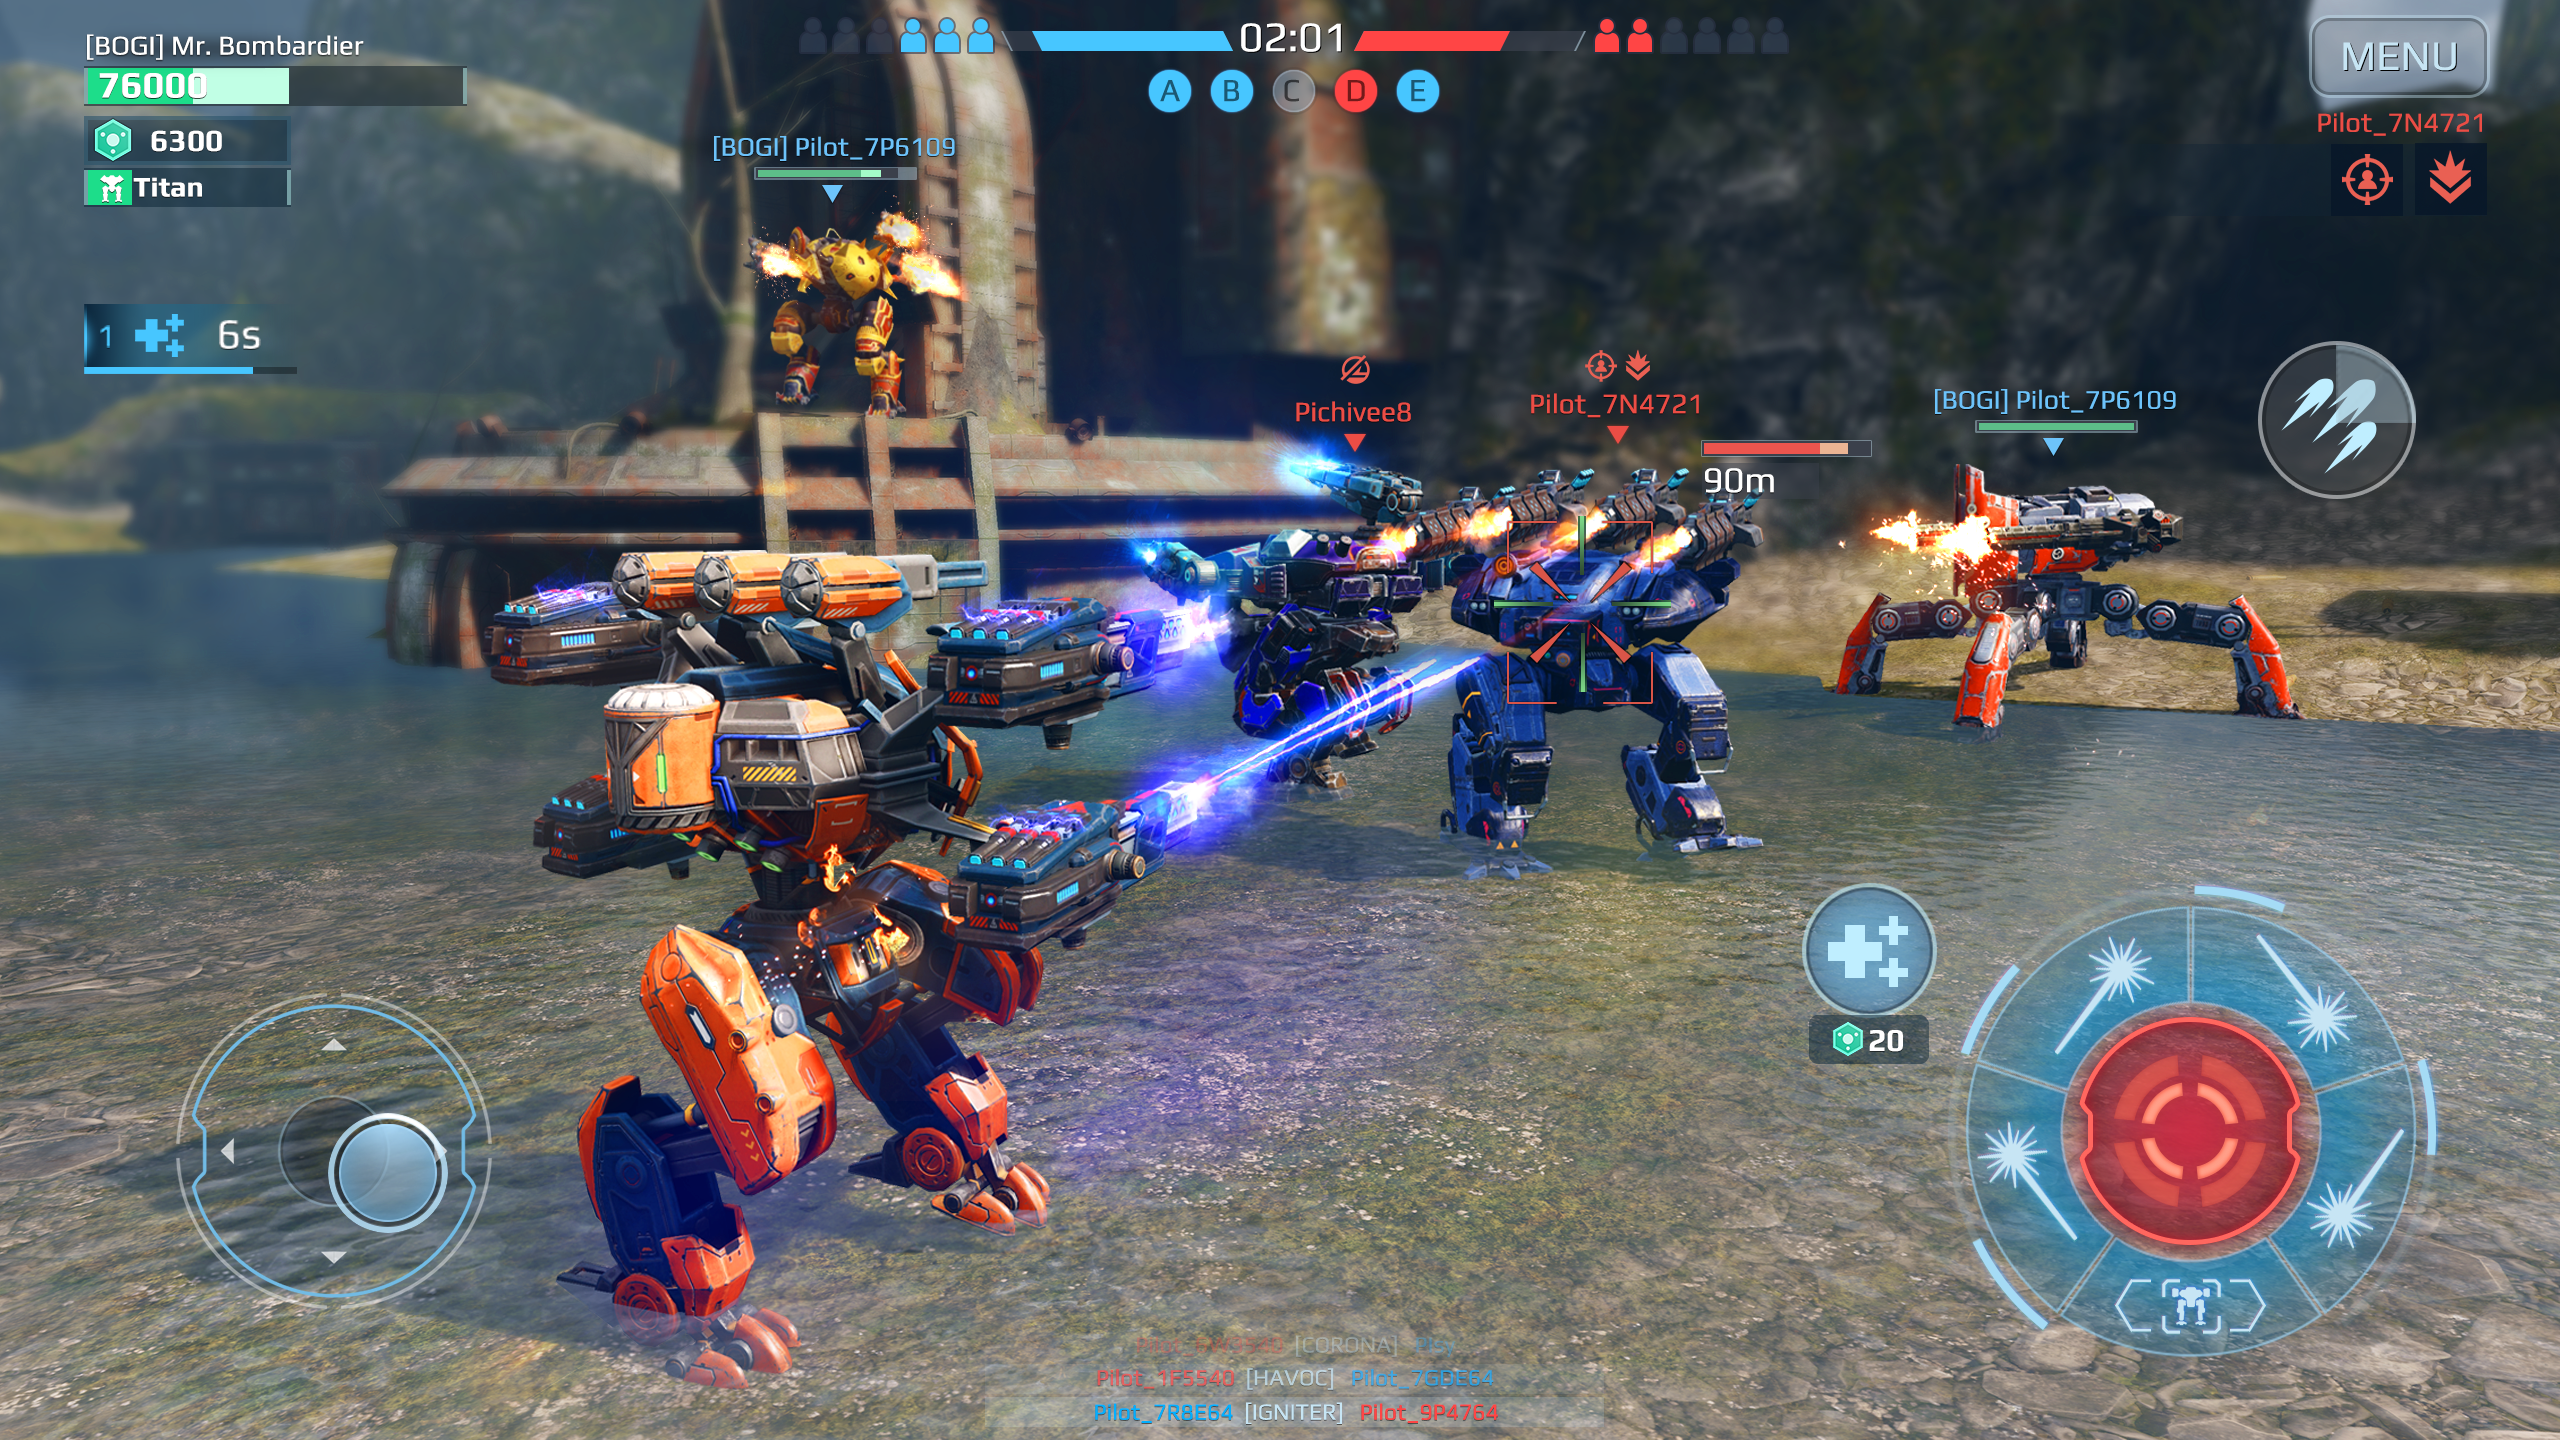 Android application War Robots Multiplayer Battles screenshort